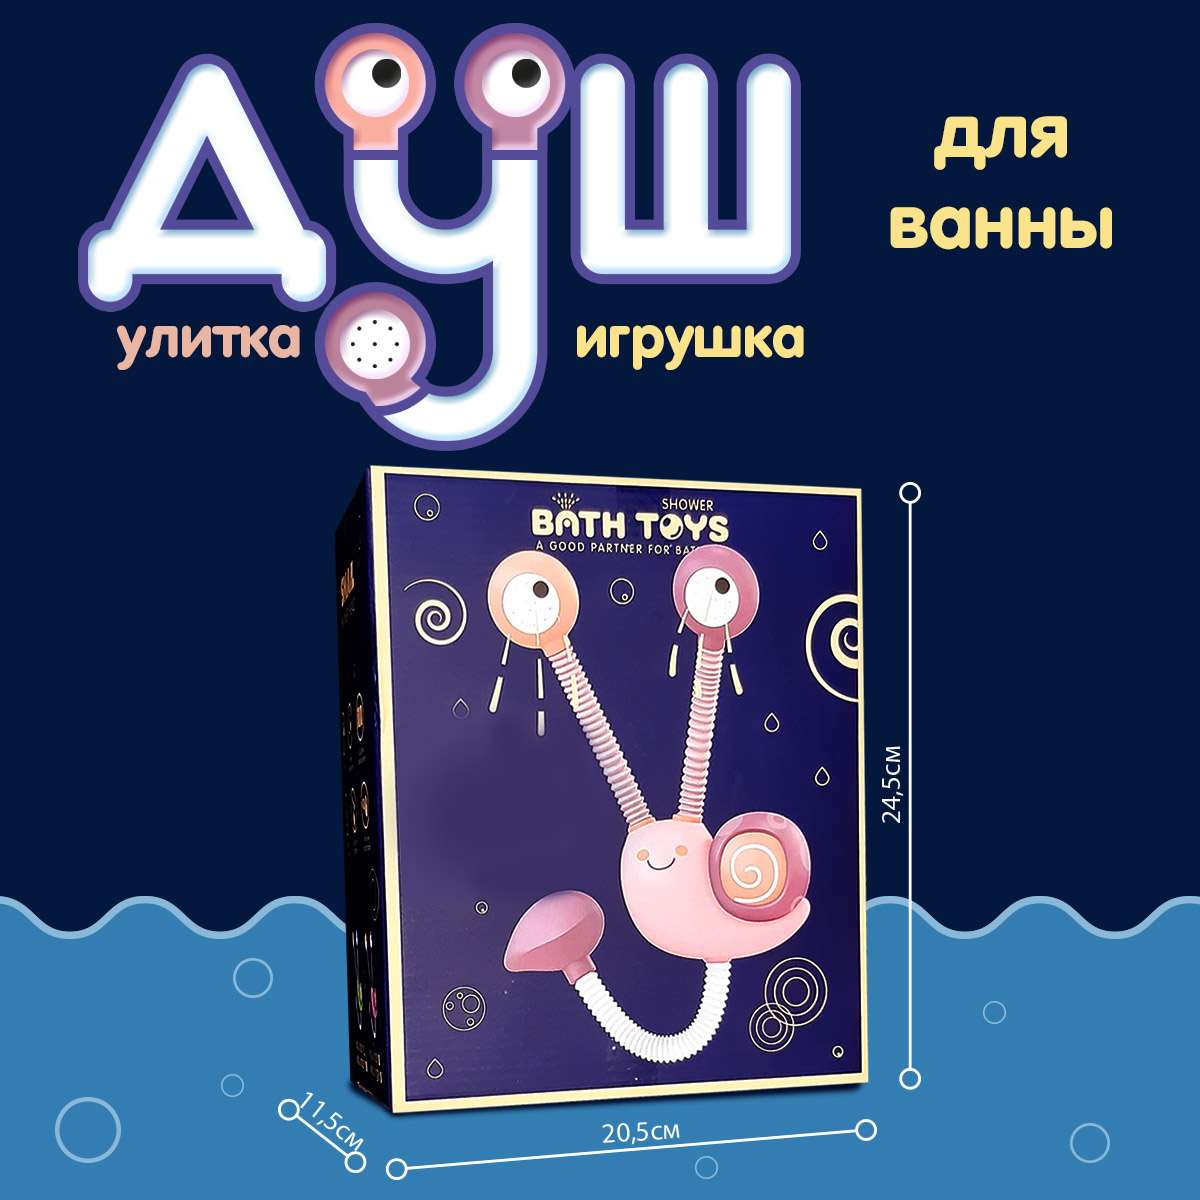 Игрушка для купания Kribly Boo Улитка с функцией душа цвет розовый - фото 3